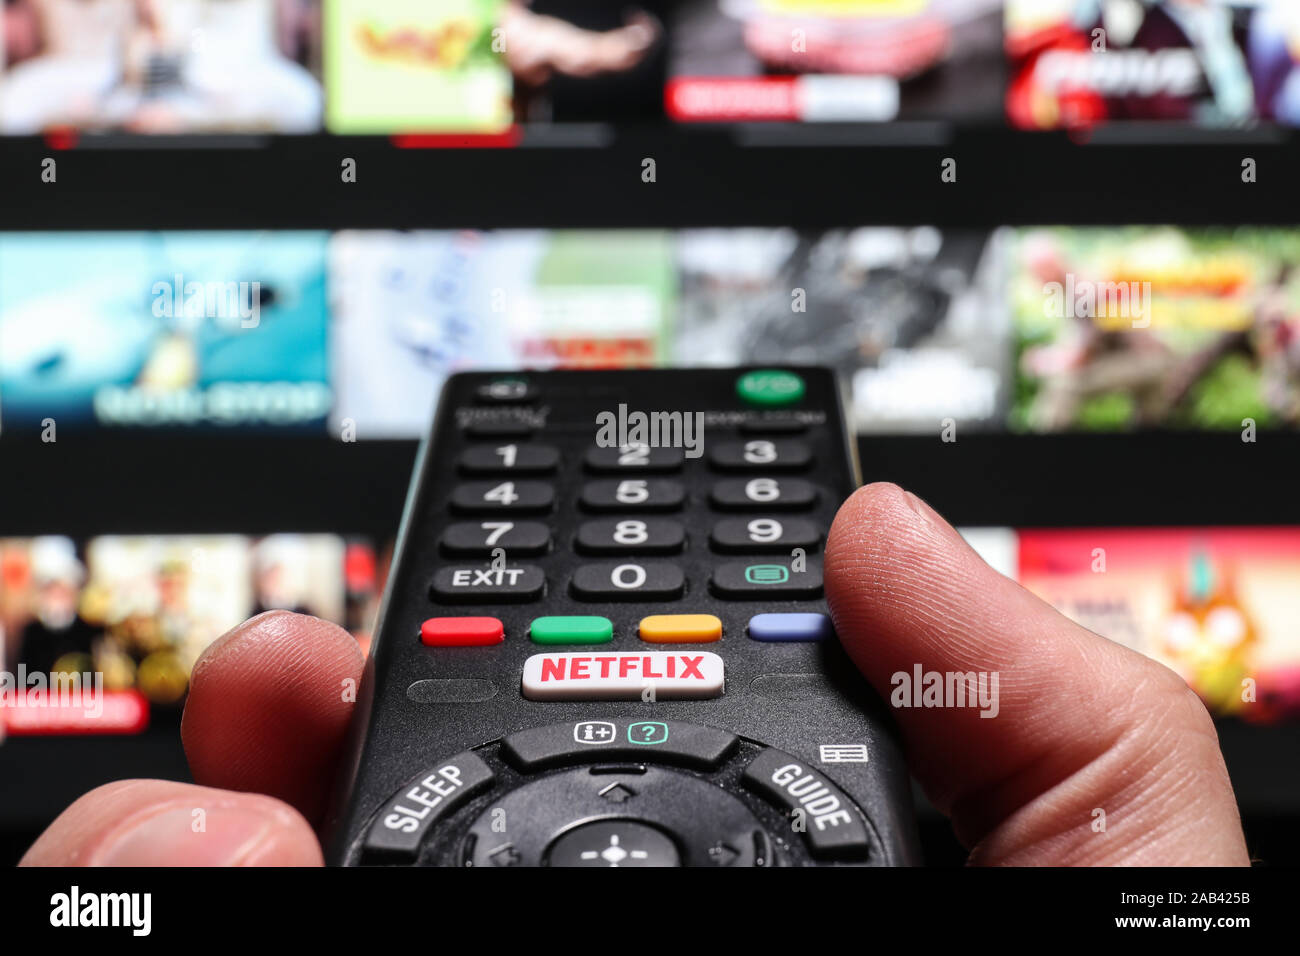 Ver Netflix en una televisión inteligente utilizando el botón de Netflix en un control remoto de TV Foto de stock